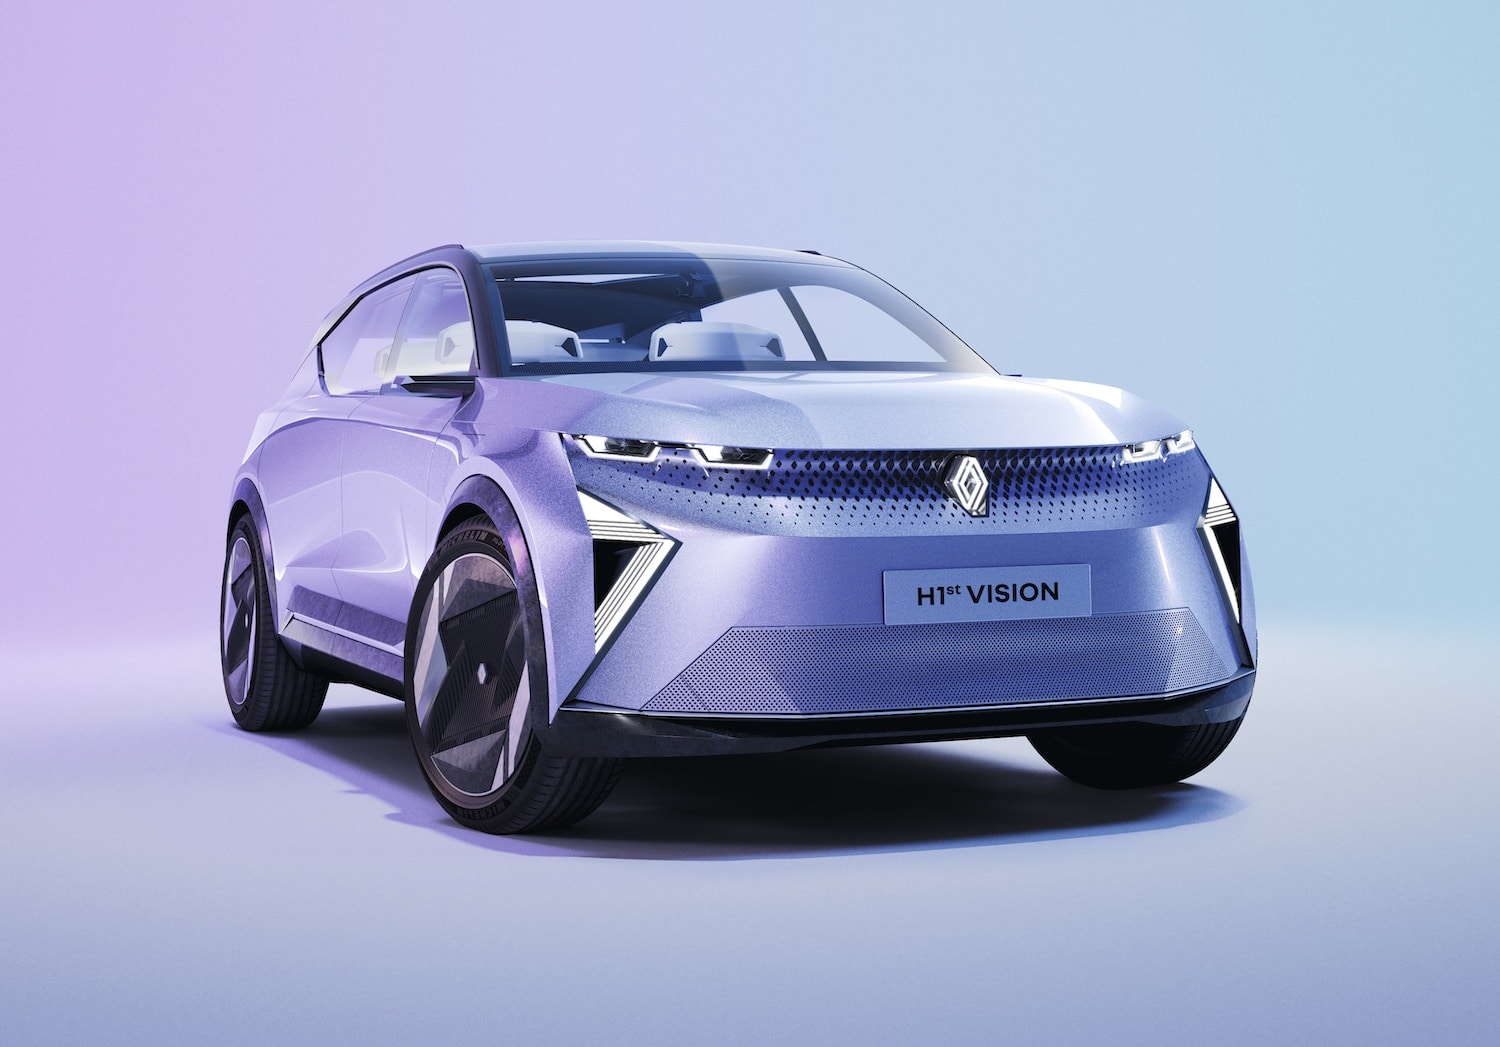 Prends garde Tesla, Renault prépare des voitures électriques plus technologiques